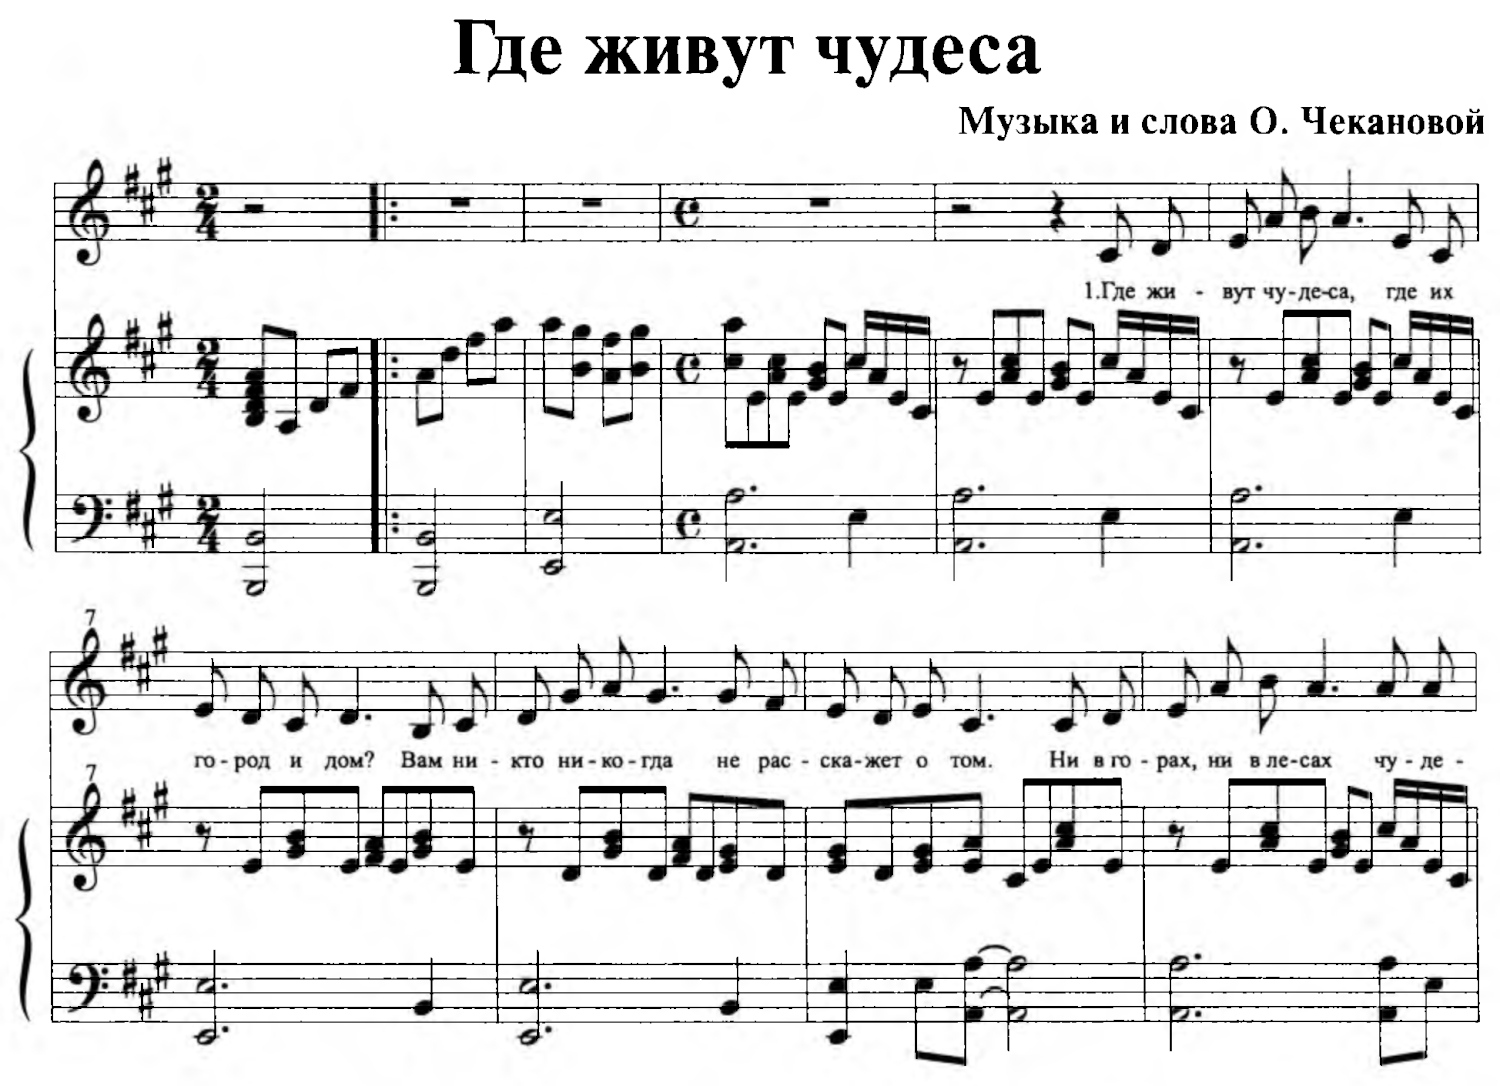 Где живут чудеса музыка и слова О. Чекановой